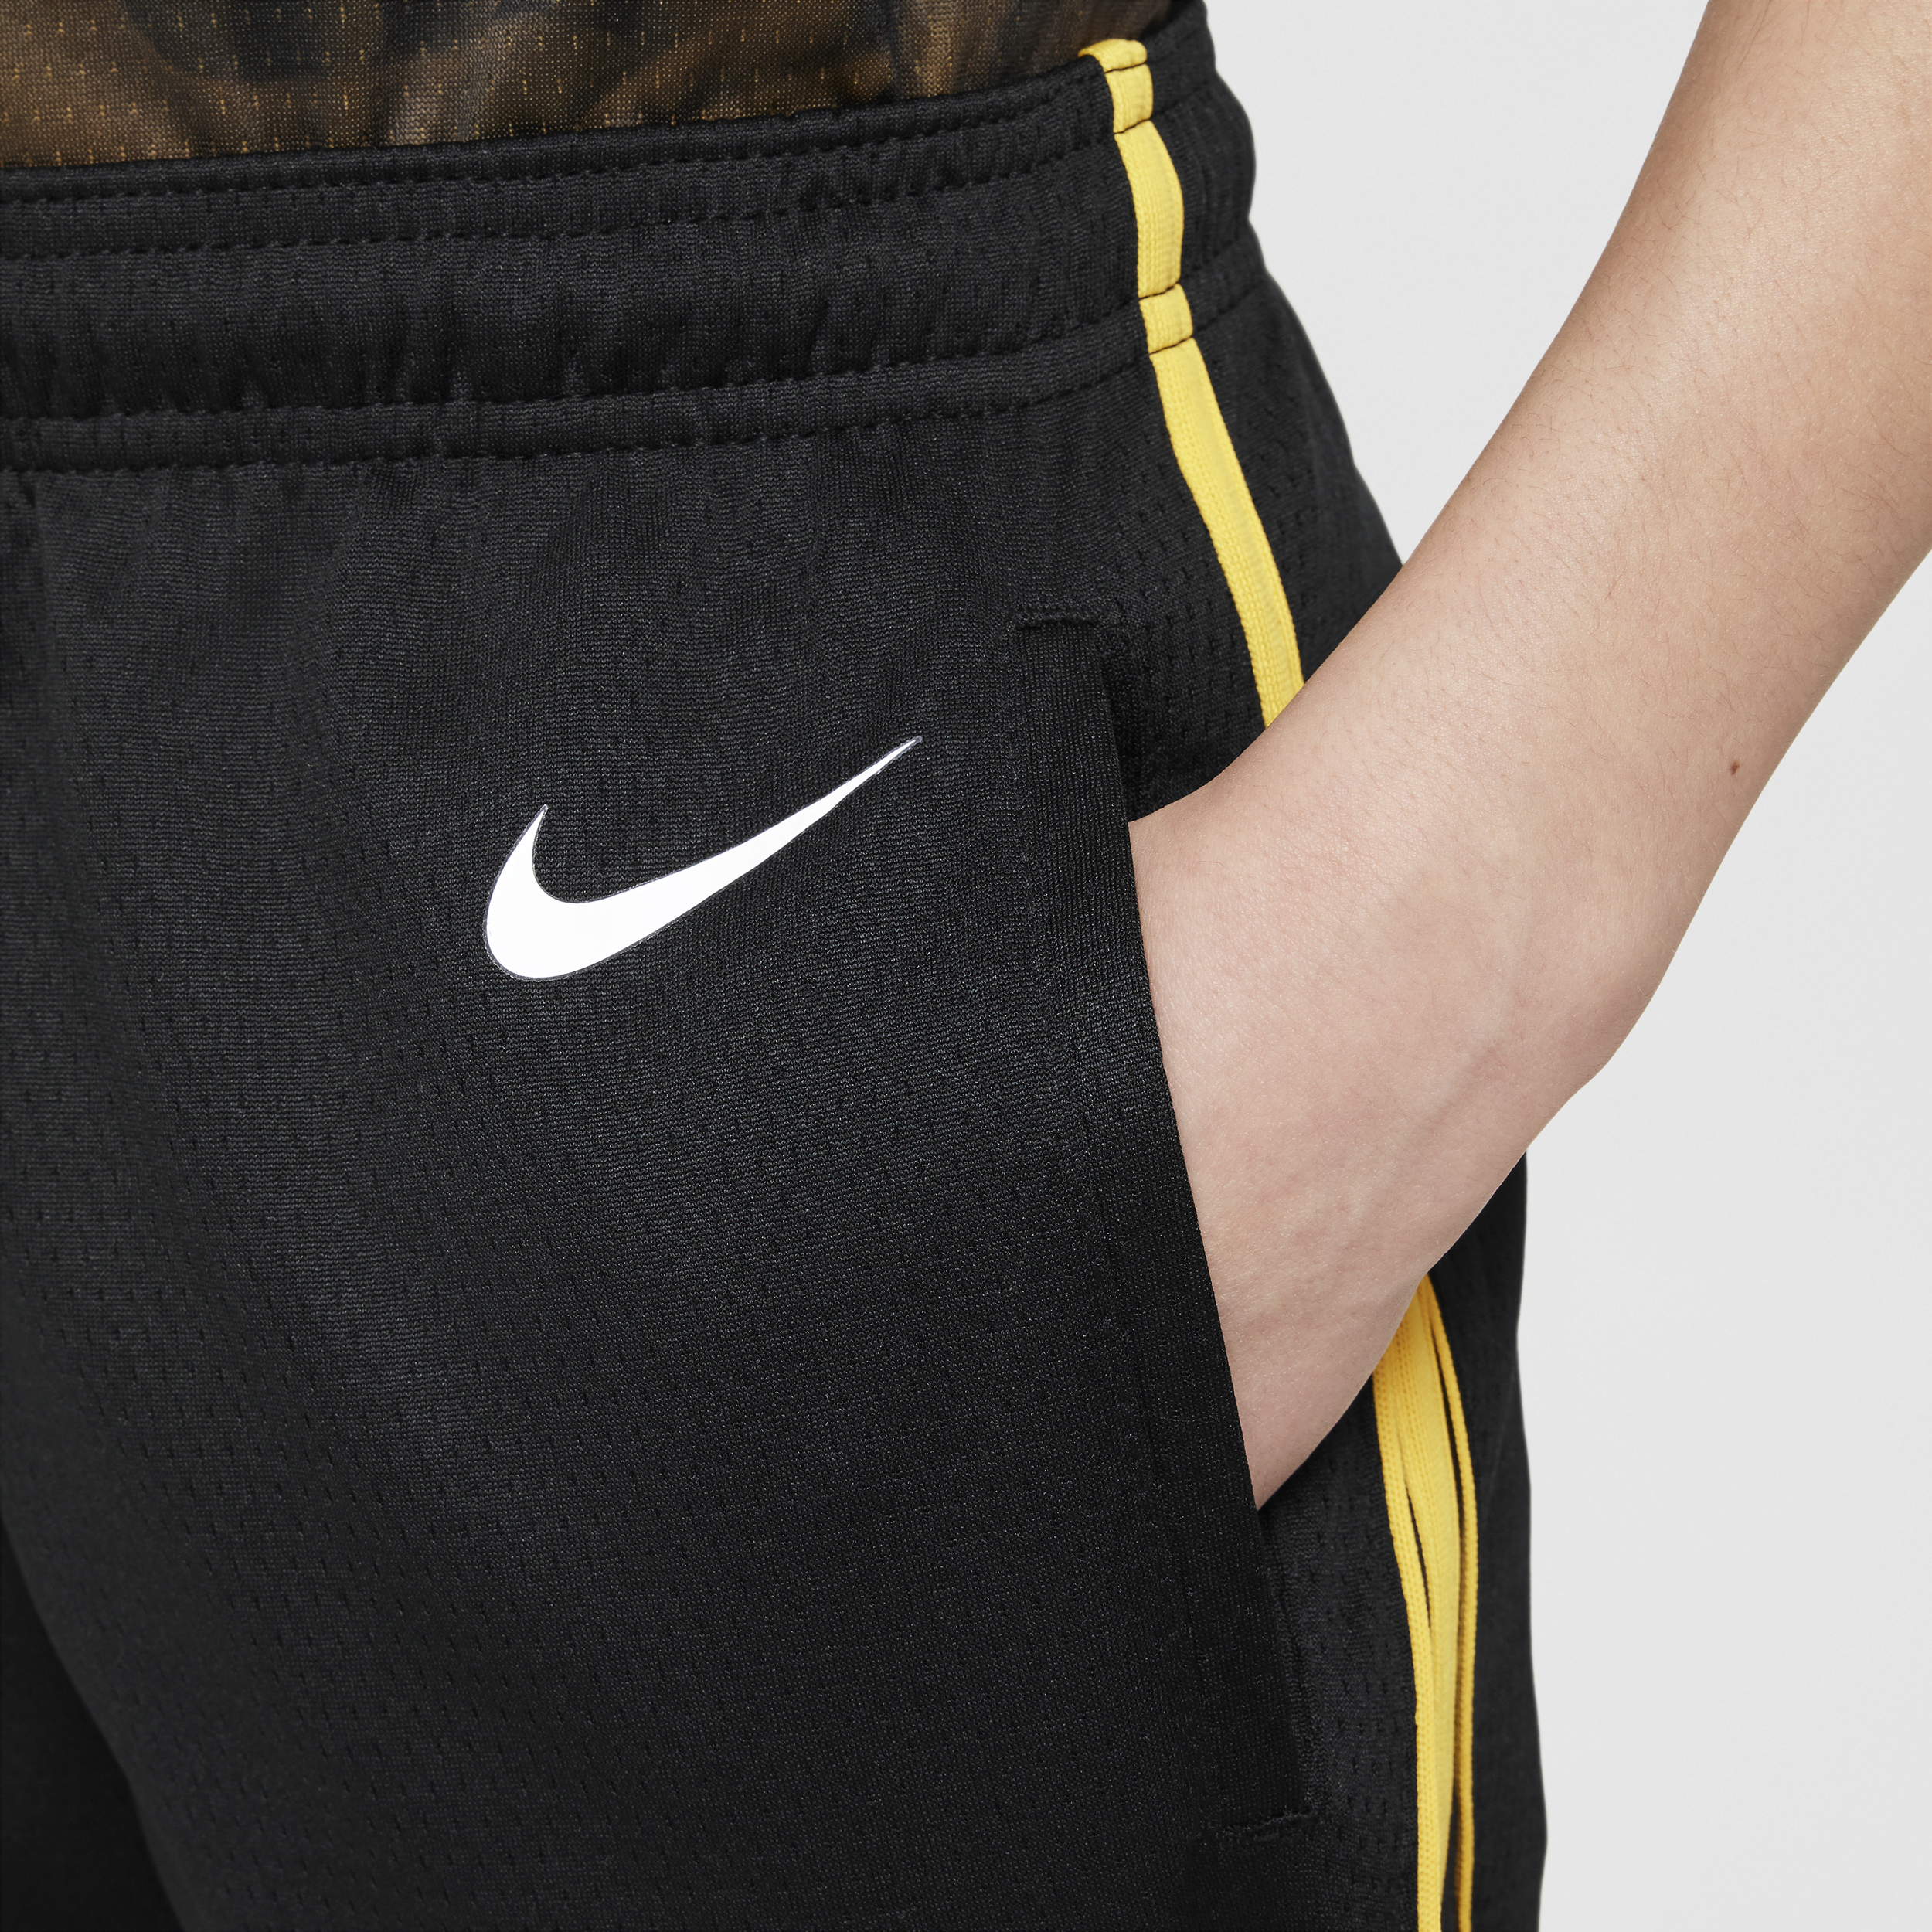 Nike Golden State Warriors Swingman NBA-shorts met Dri-FIT voor kids Zwart